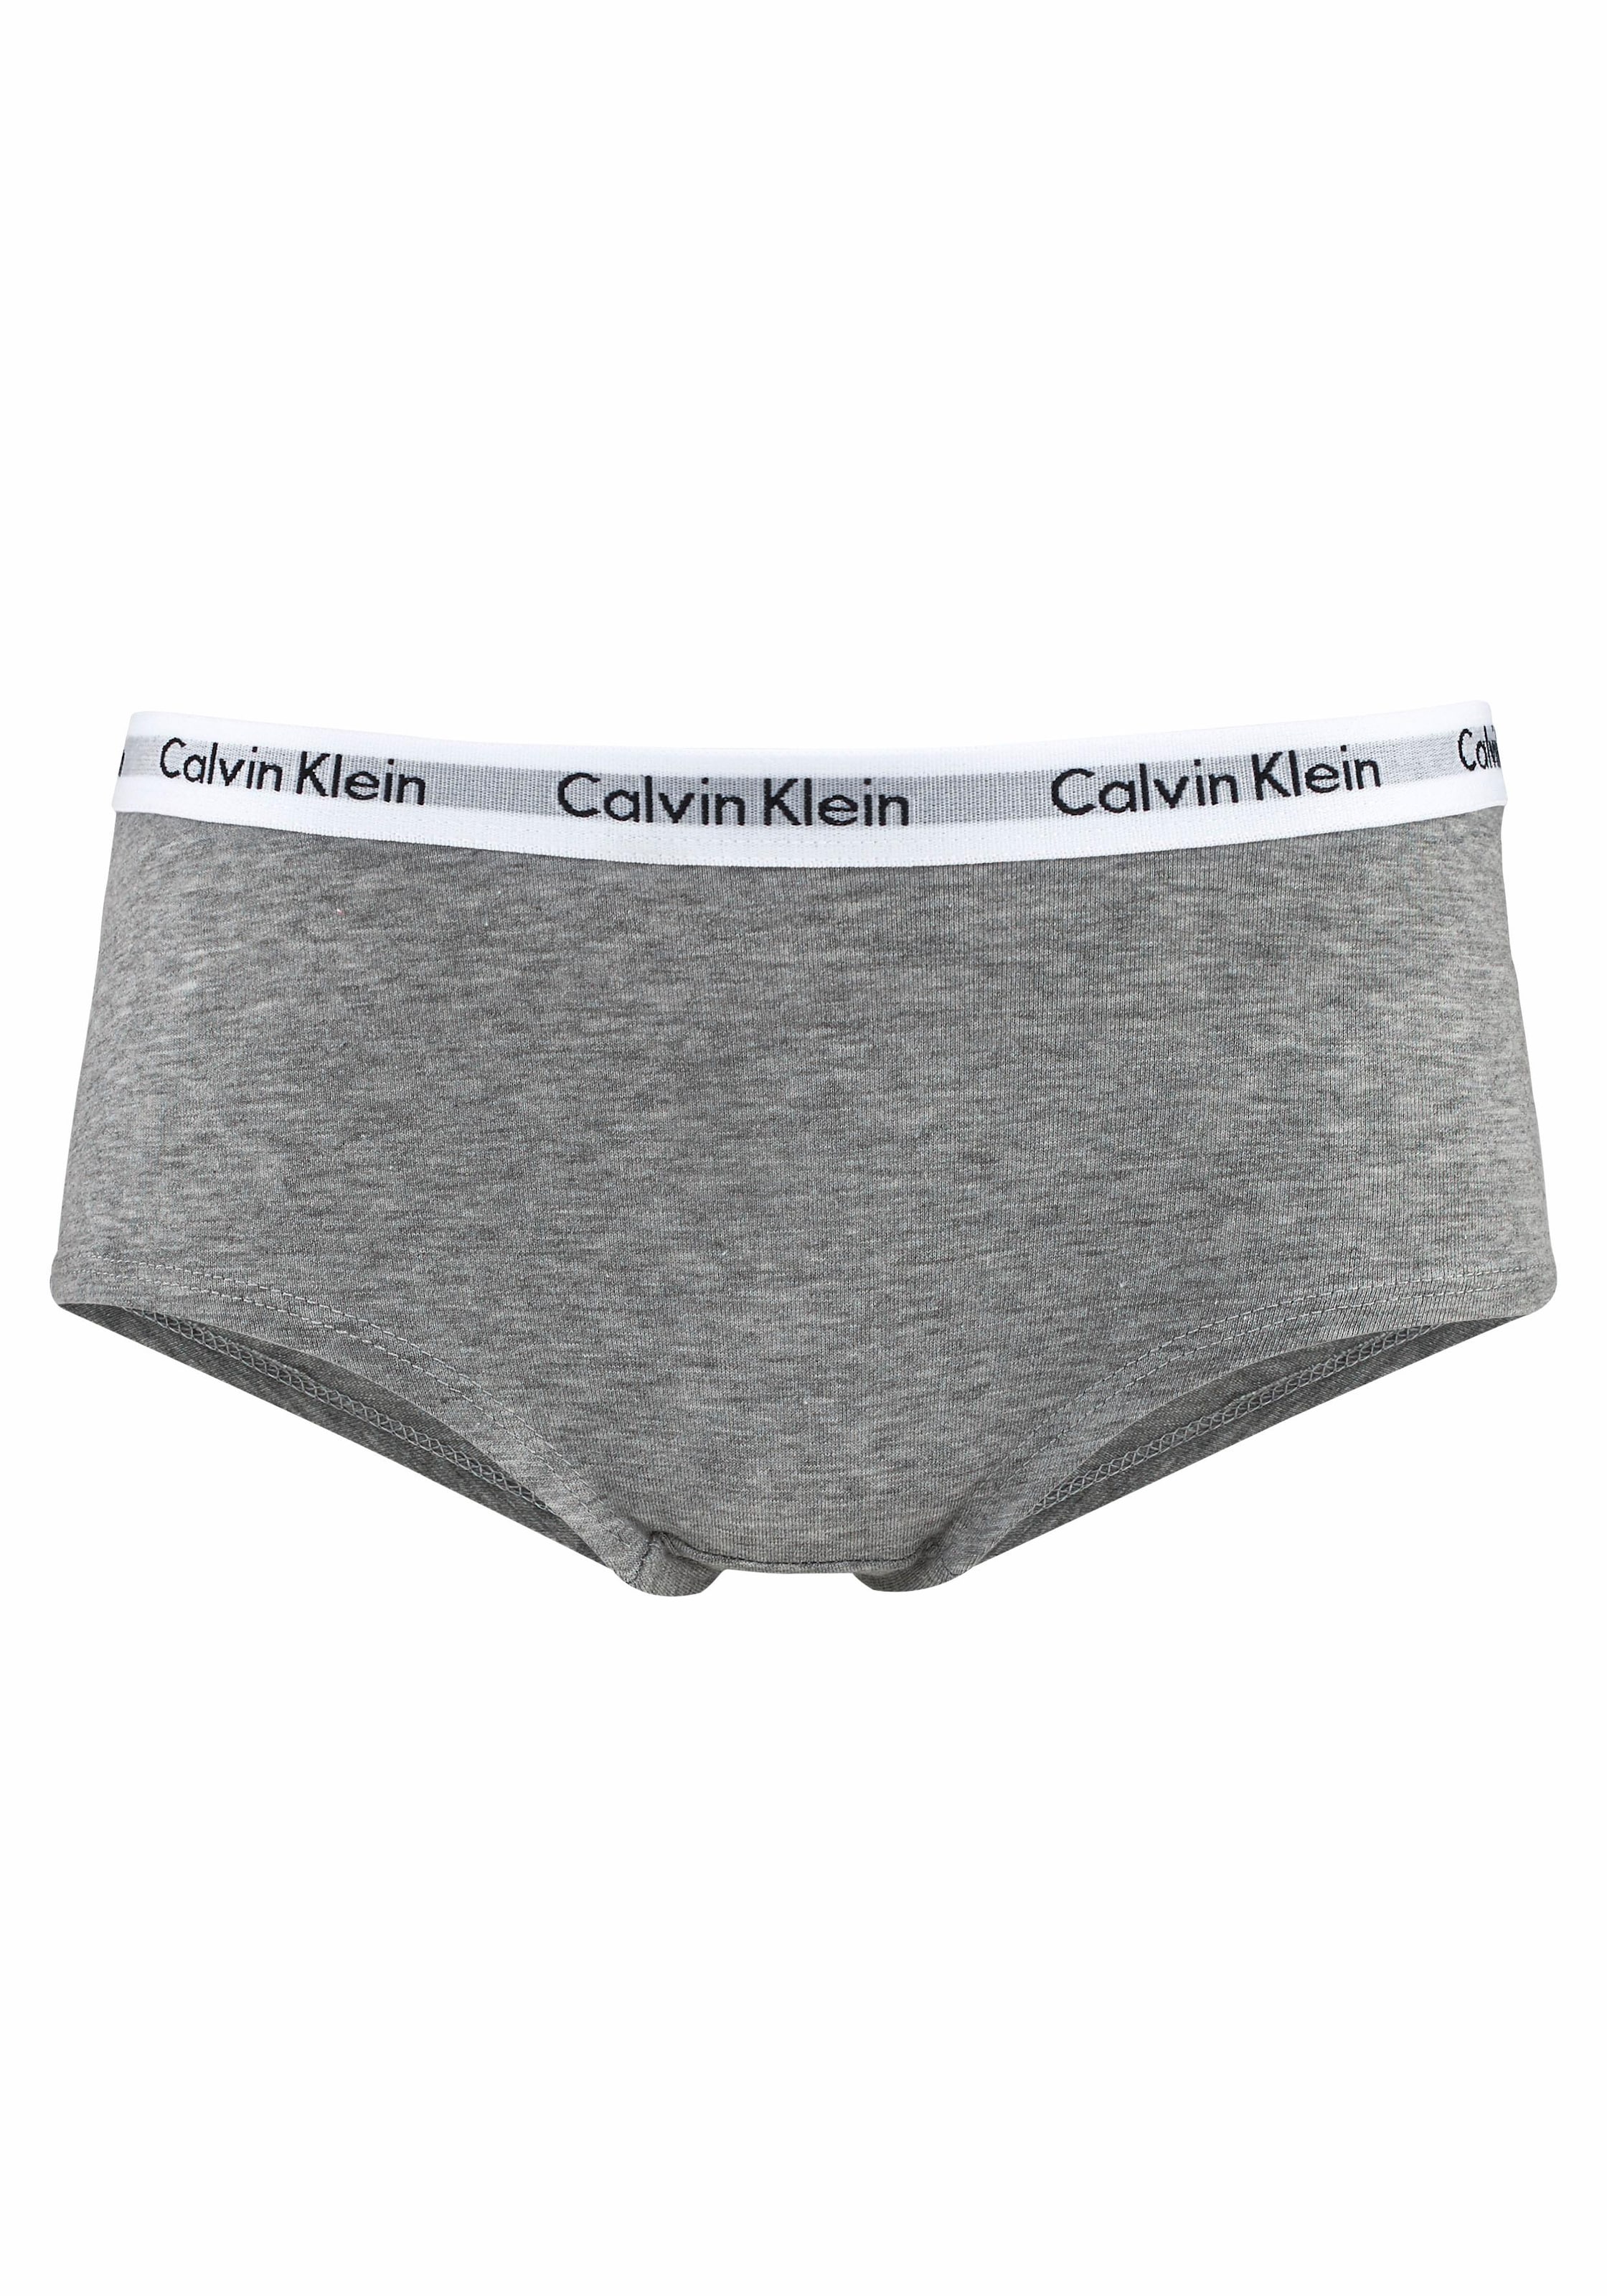 Calvin Klein Panty, Mädchen MiniMe,für Junior Kids mit Logobund St.), Kinder (2